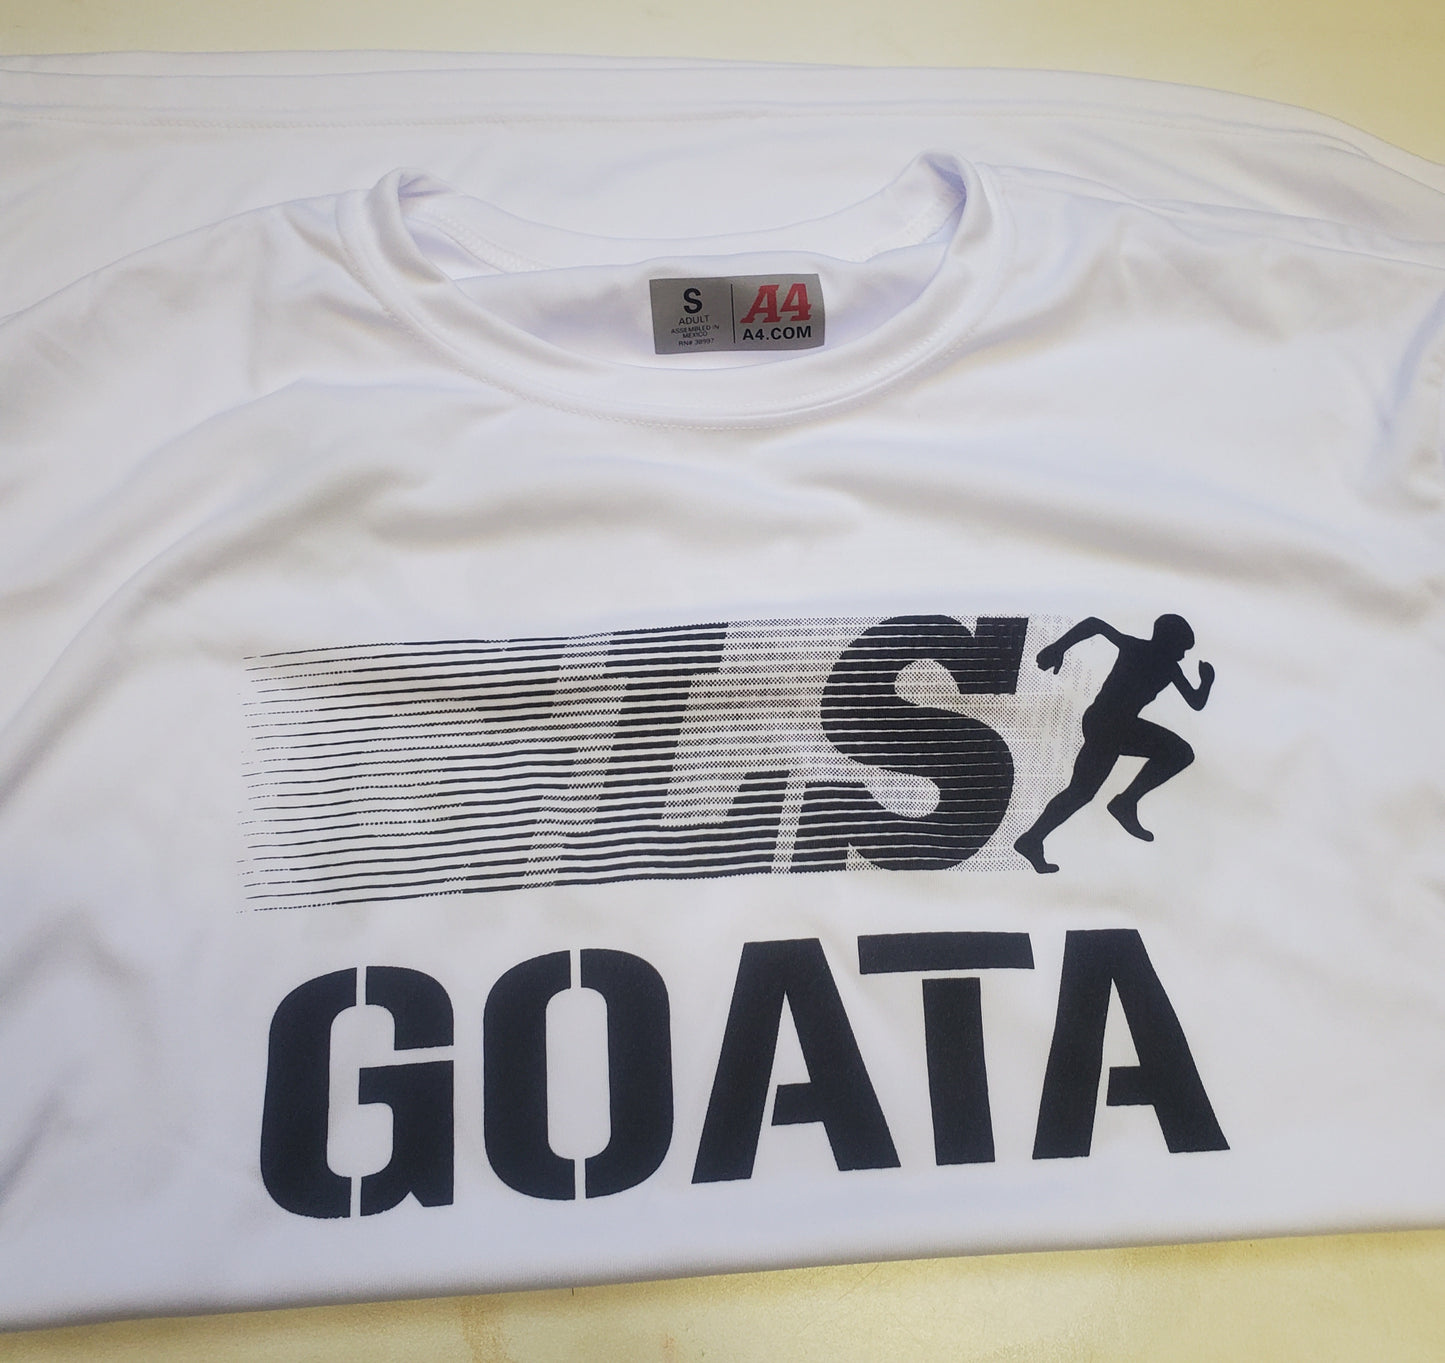 GLS\GOATA Tee Shirts(White)